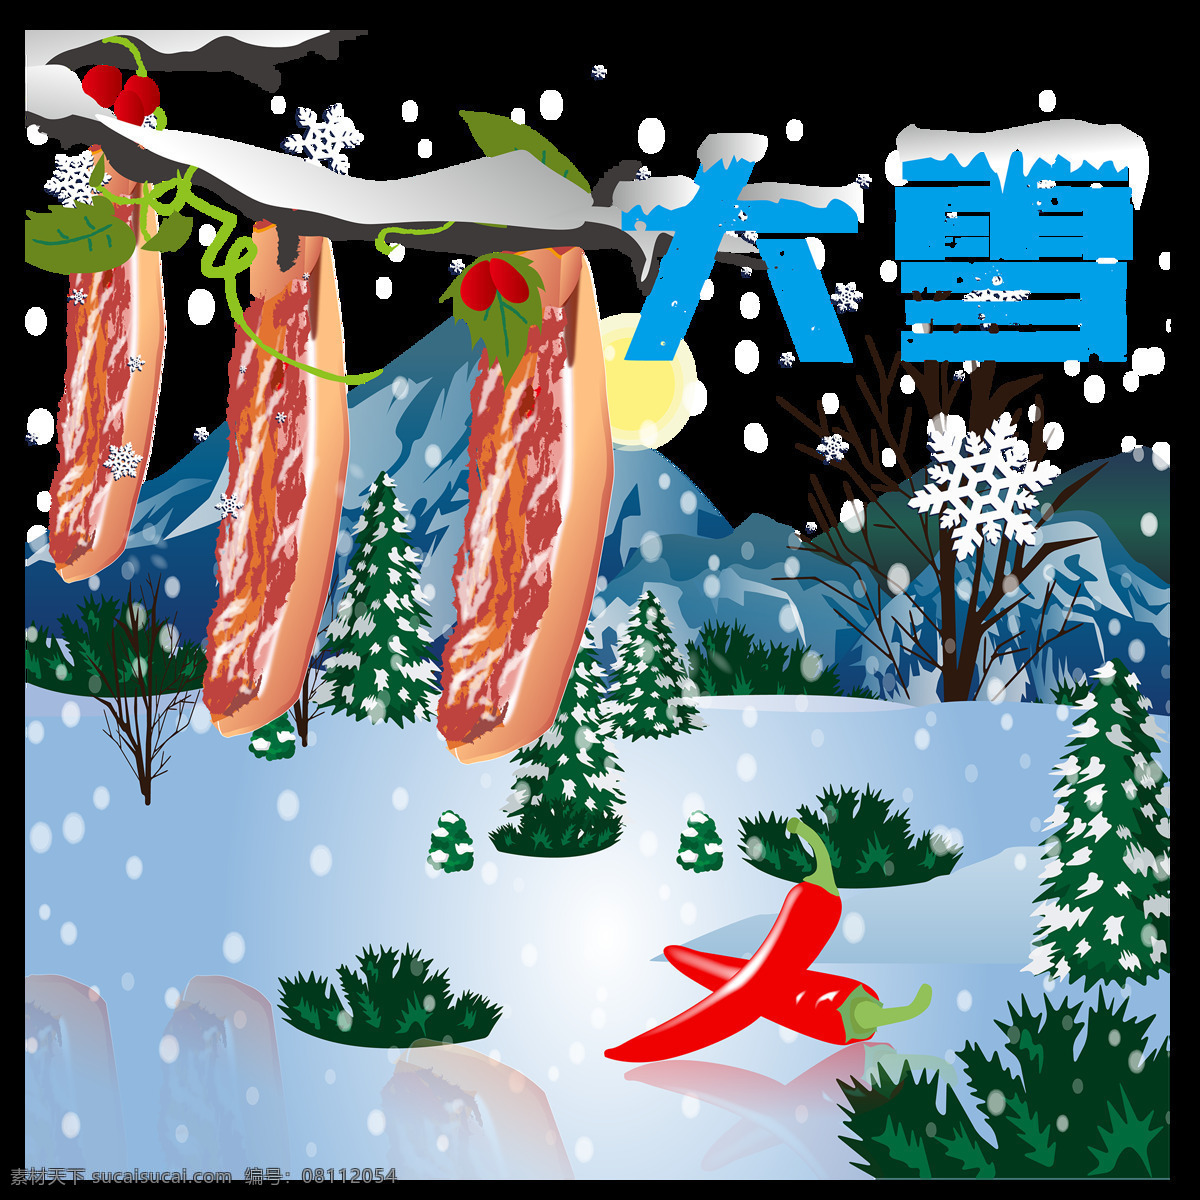 大雪 节气 腊肉 红果 雪地 手绘 矢量图 节日 动漫动画 风景漫画